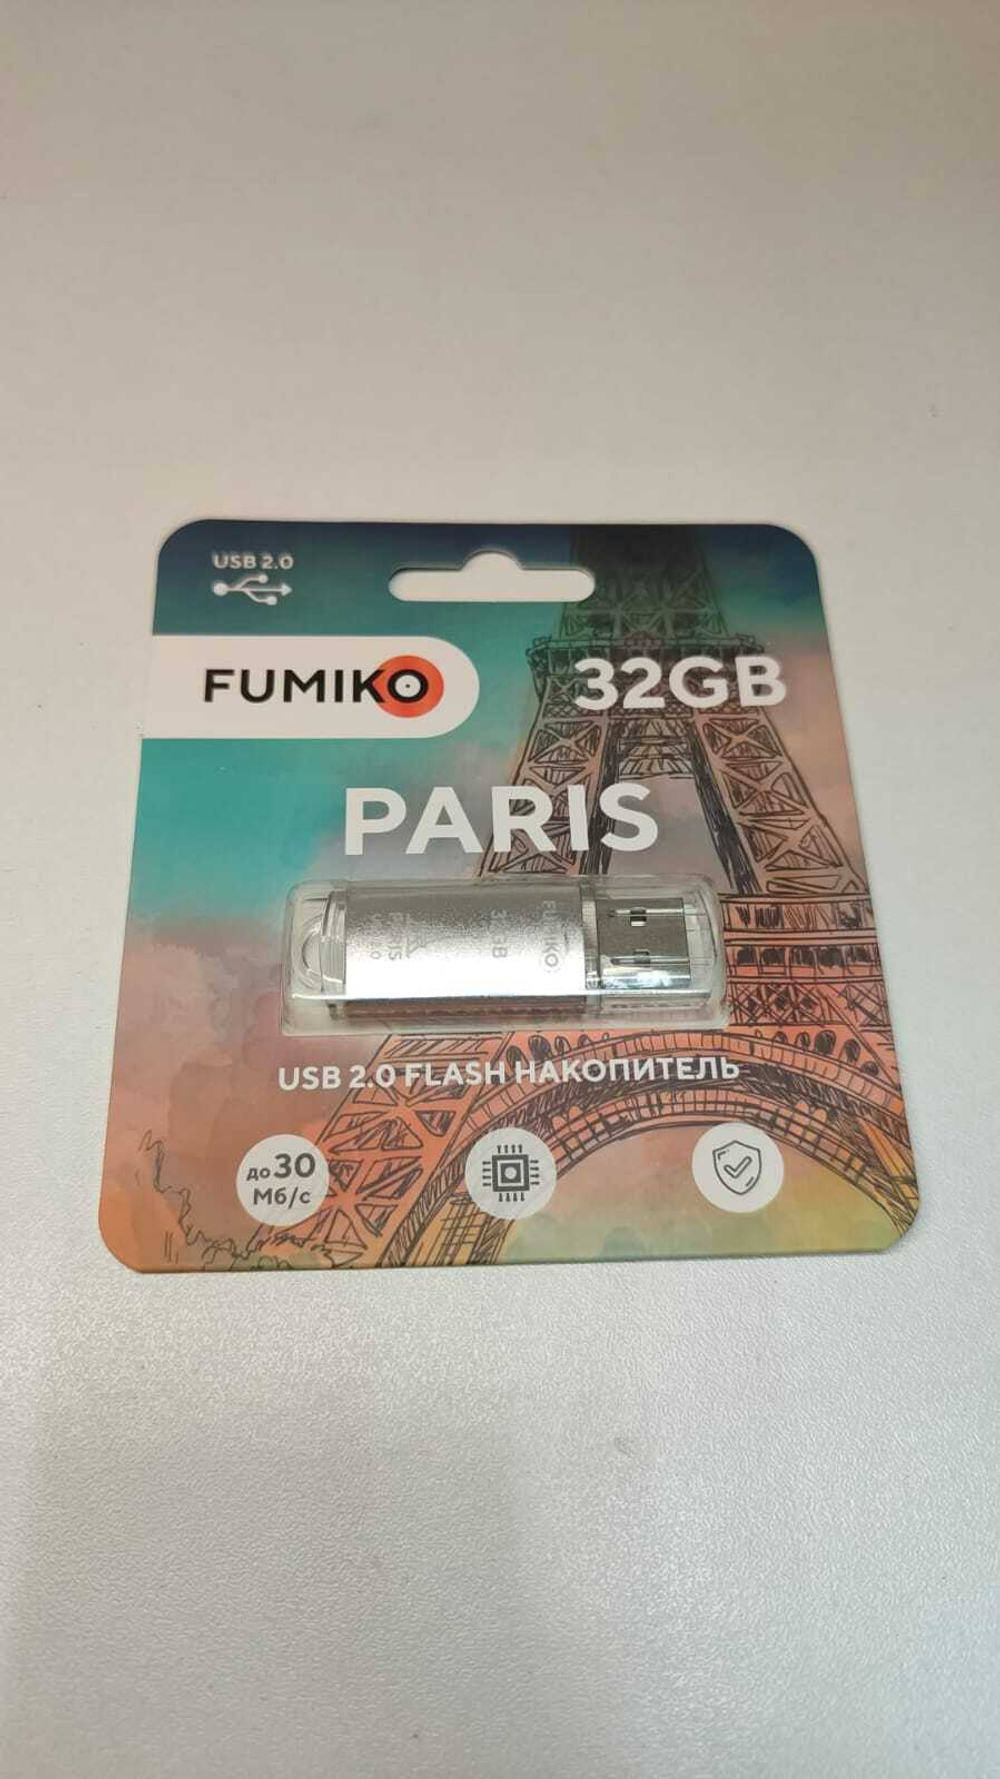 Флешка FUMIKO PARIS 32GB серебристая USB 2.0